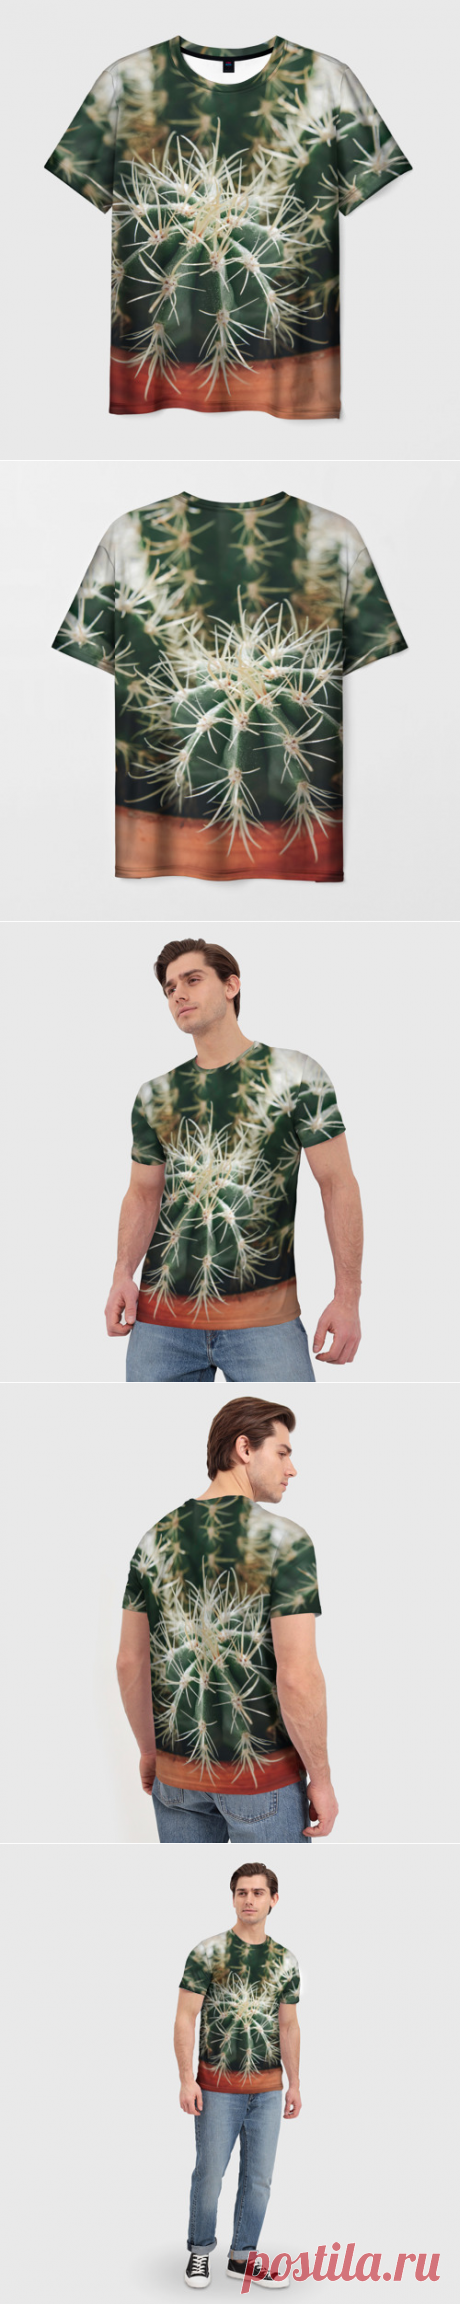 Мужская футболка 3D Кактусы - фотография - купить по цене 1330 руб в интернет-магазине Всемайки, арт 3649293